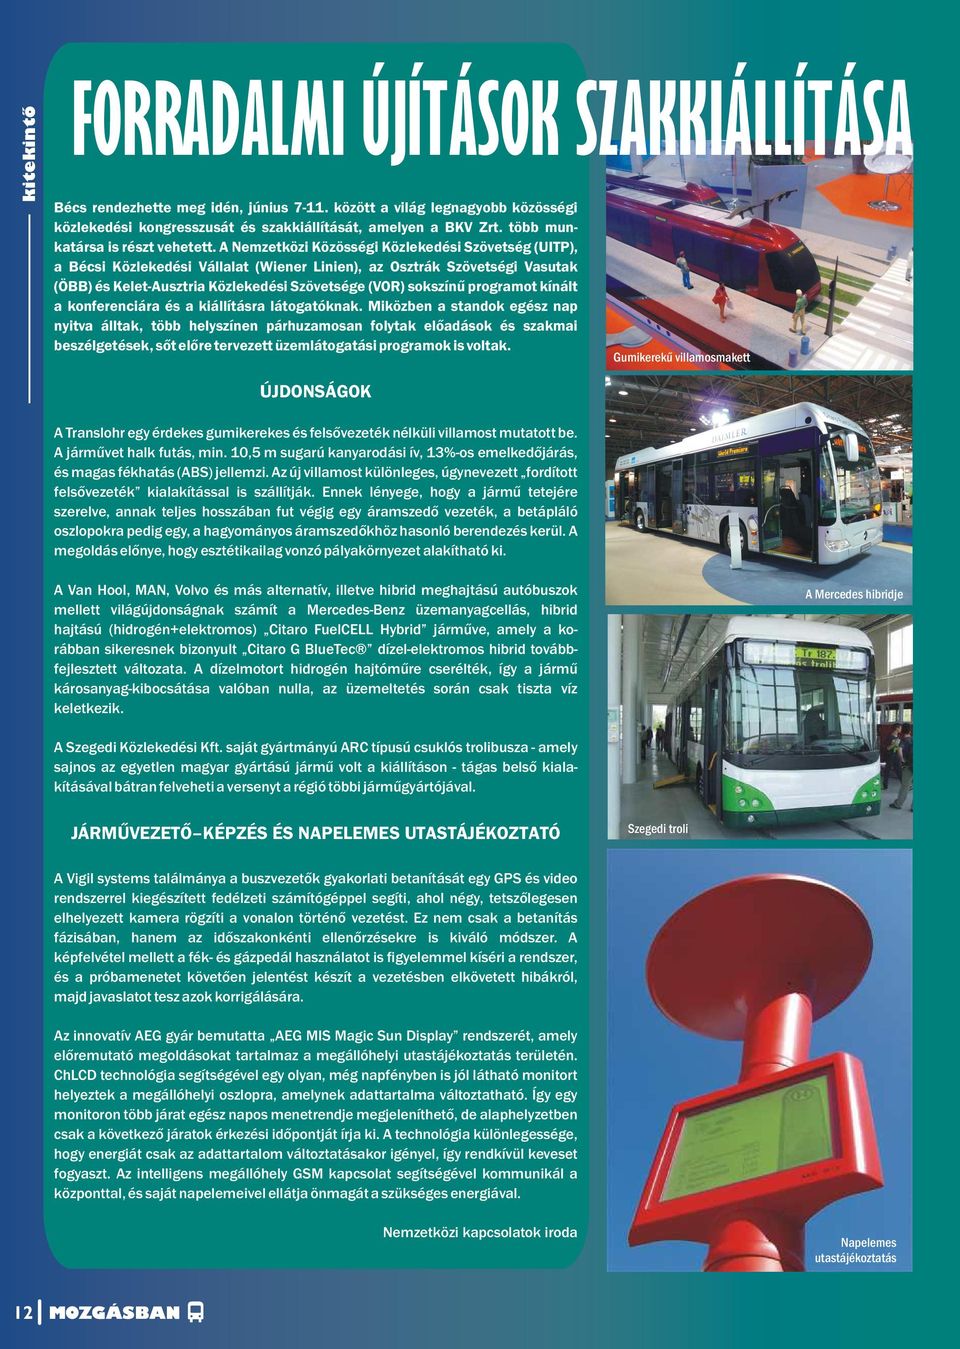 A Nemzetközi Közösségi Közlekedési Szövetség (UITP), a Bécsi Közlekedési Vállalat (Wiener Linien), az Osztrák Szövetségi Vasutak (ÖBB) és Kelet-Ausztria Közlekedési Szövetsége (VOR) sokszínű